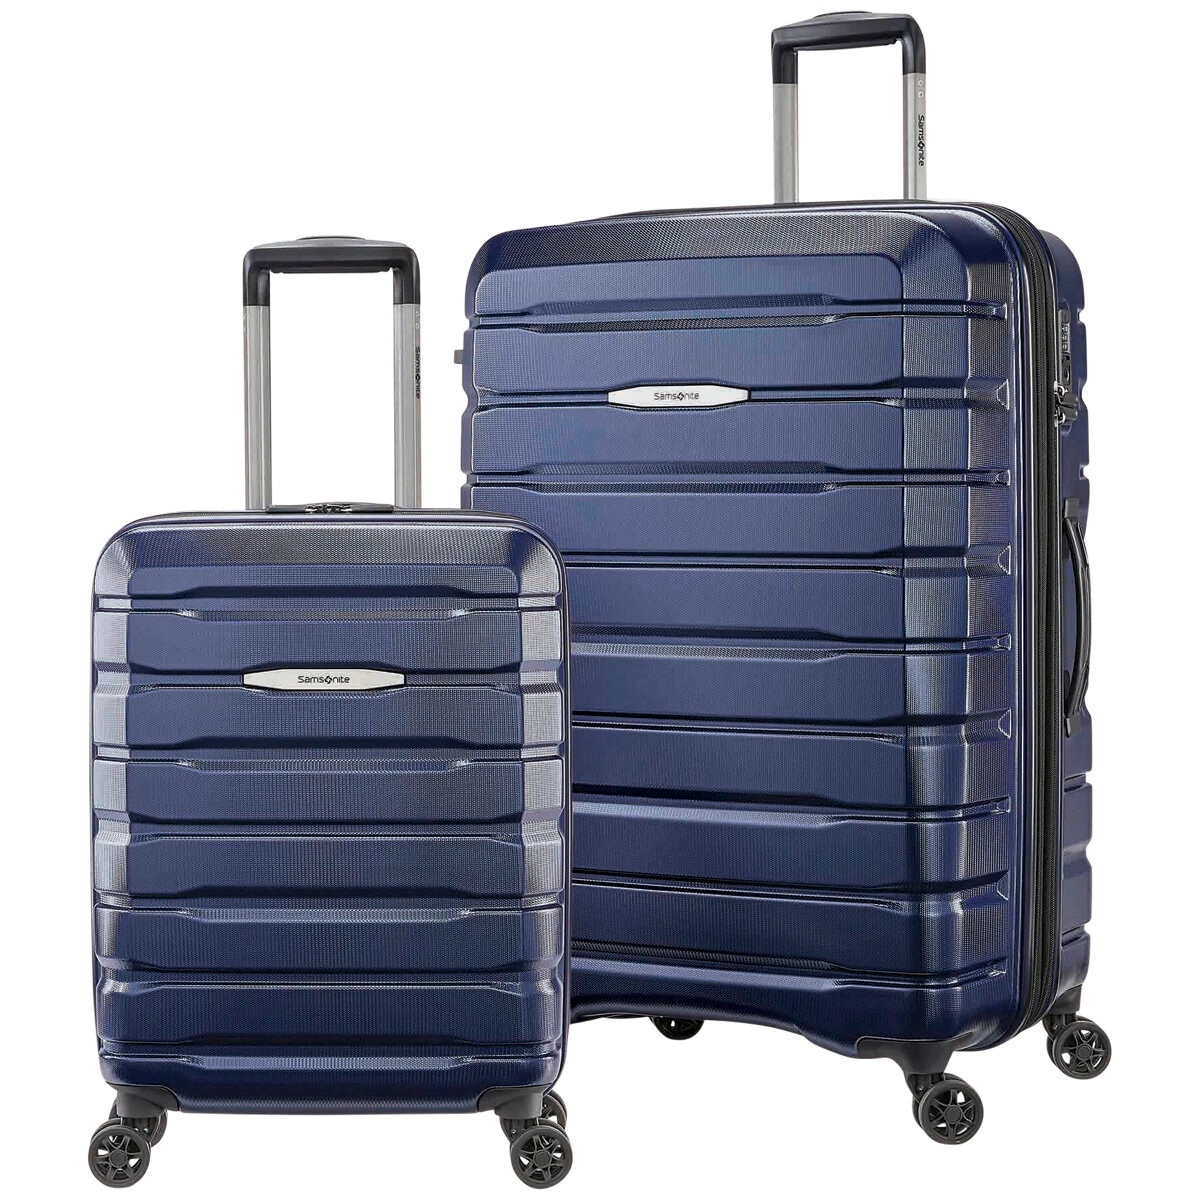 Samsonite Tech Two Hardside Luggage Set | vlr.eng.br